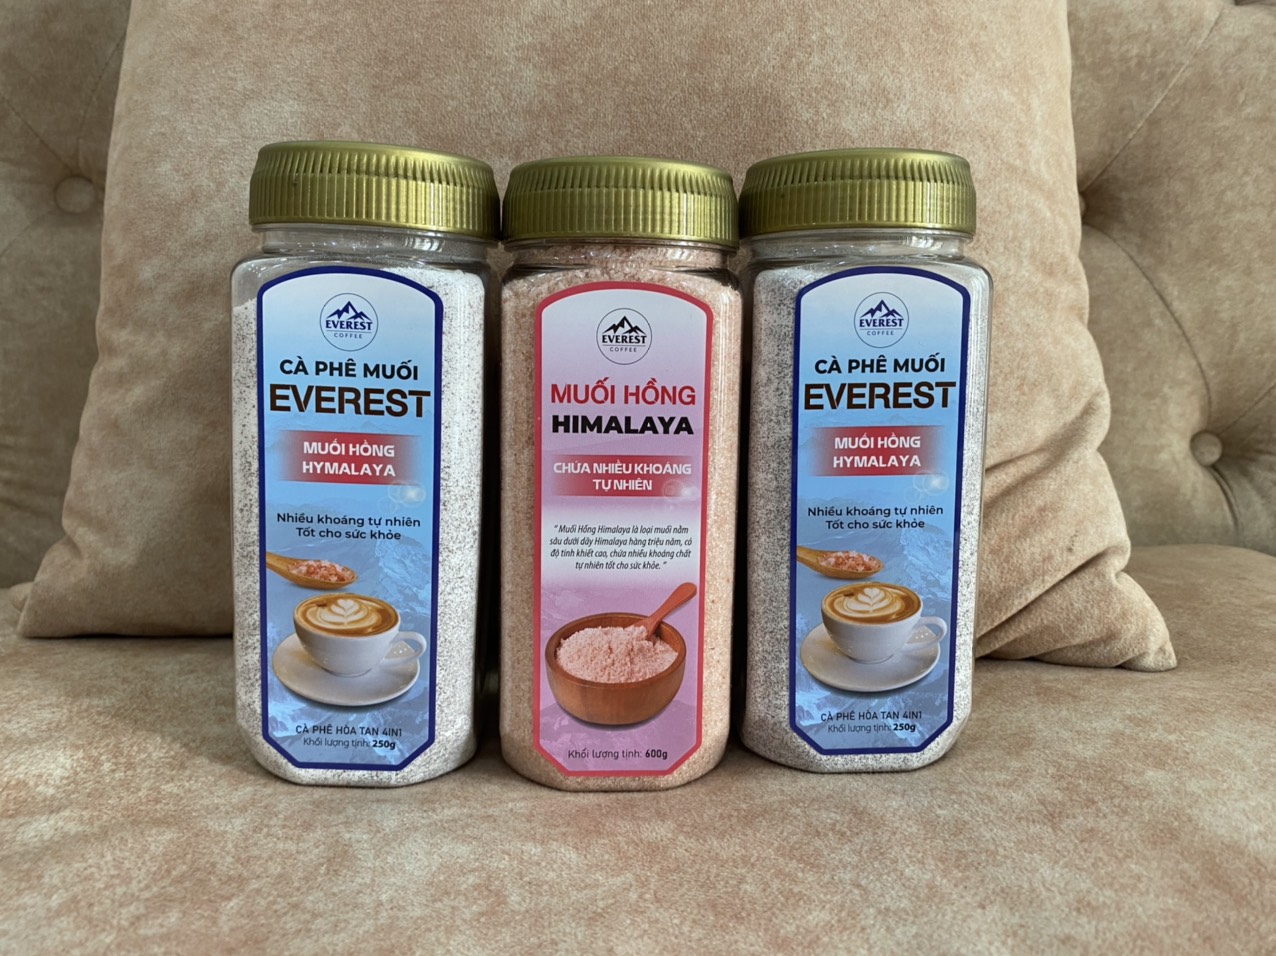 Cà Phê MUỐI Hồng HIMALAYA 4in1 EVEREST COFFEES .Tiêu Chuẩn FDA Hoa Kỳ. Hàng Việt Nam Chất Lượng Xuất Khẩu Mỹ